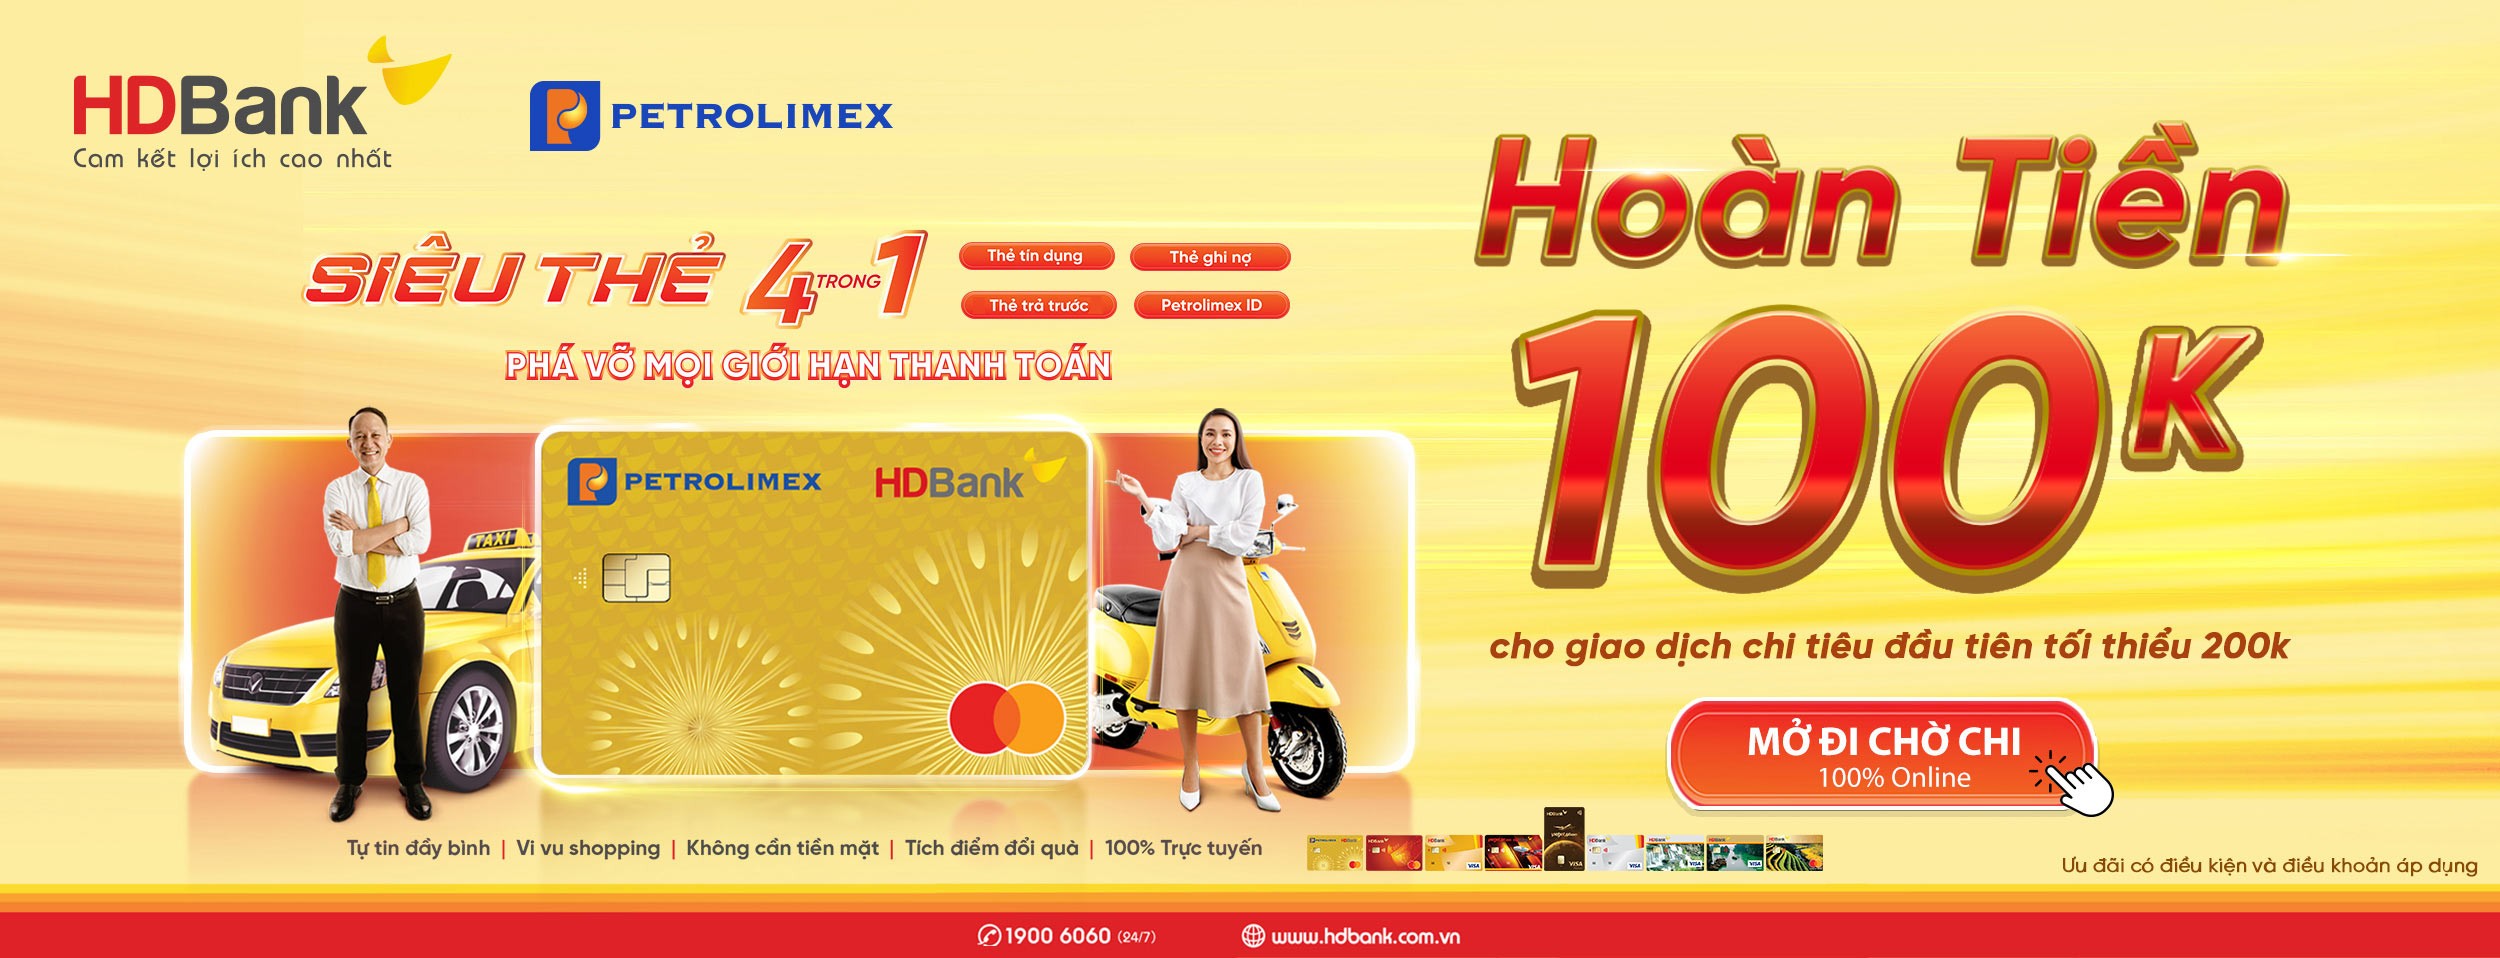 Tặng 100k khi chi tiêu cùng Thẻ liên kết HDBank Petrolimex 4in1